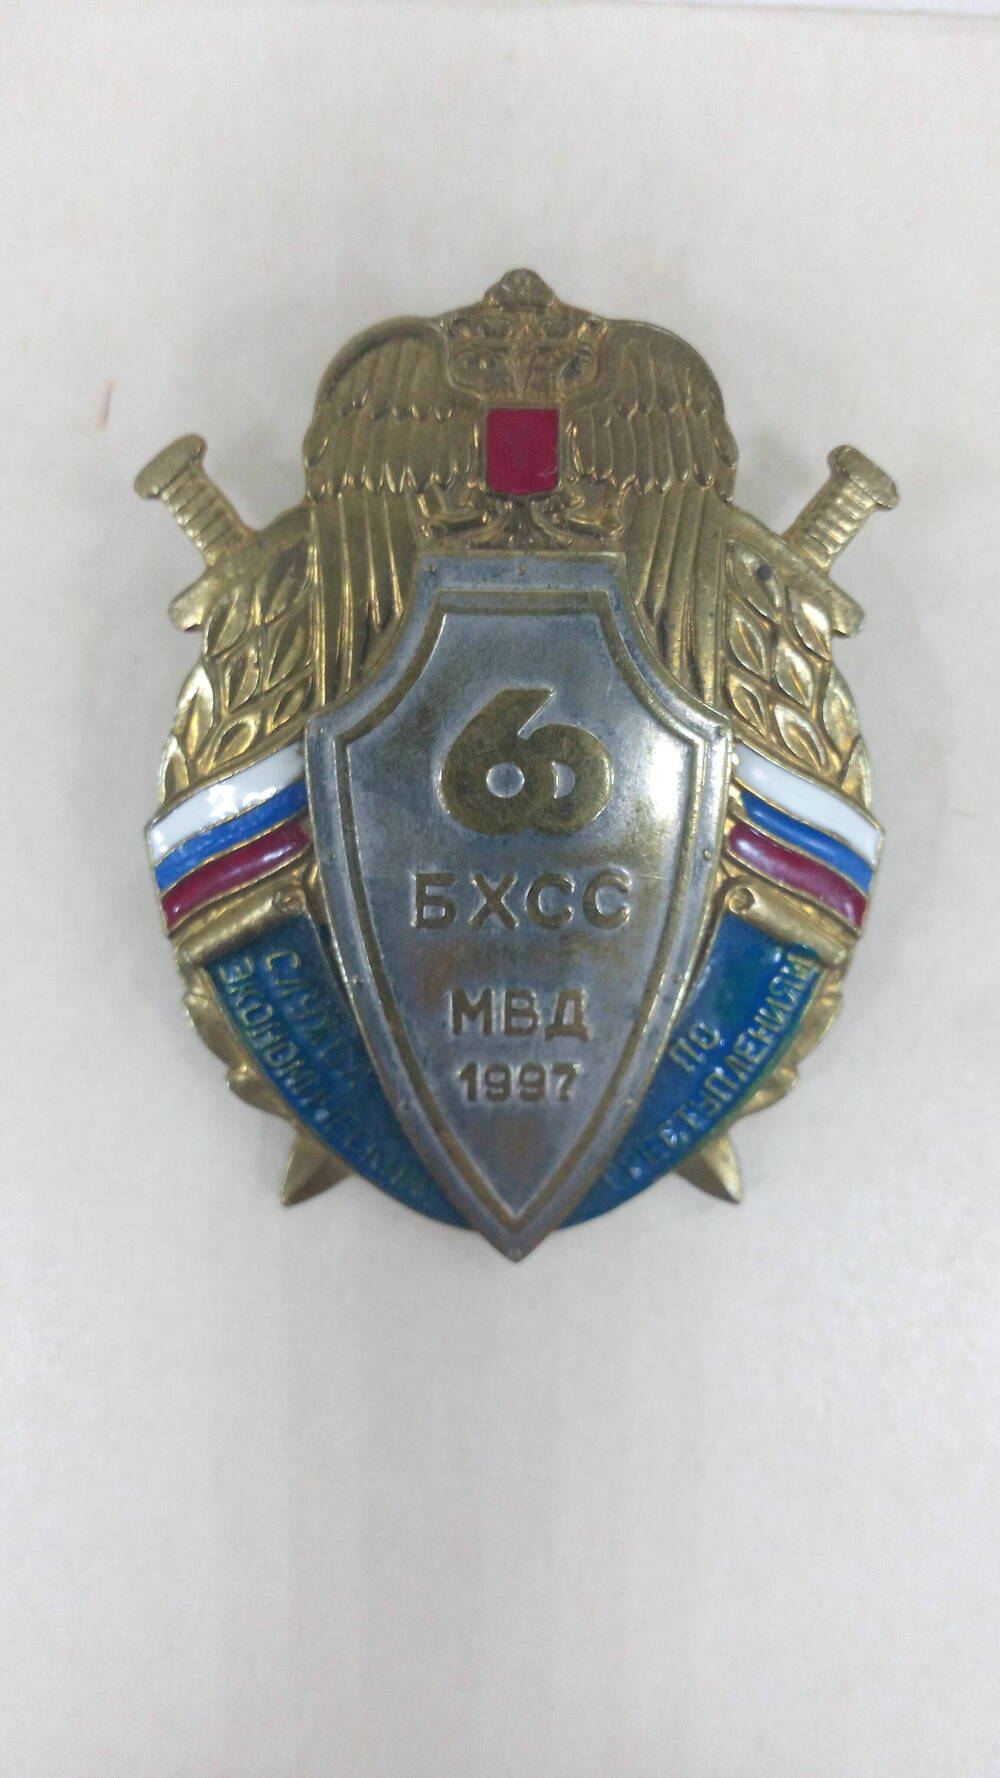 Знак нагрудный памятный 60 БХСС МВД 1997 выпущен УБЭП ГУВД  Ростовской области к 60-летию службы по экономическим  преступлениям.